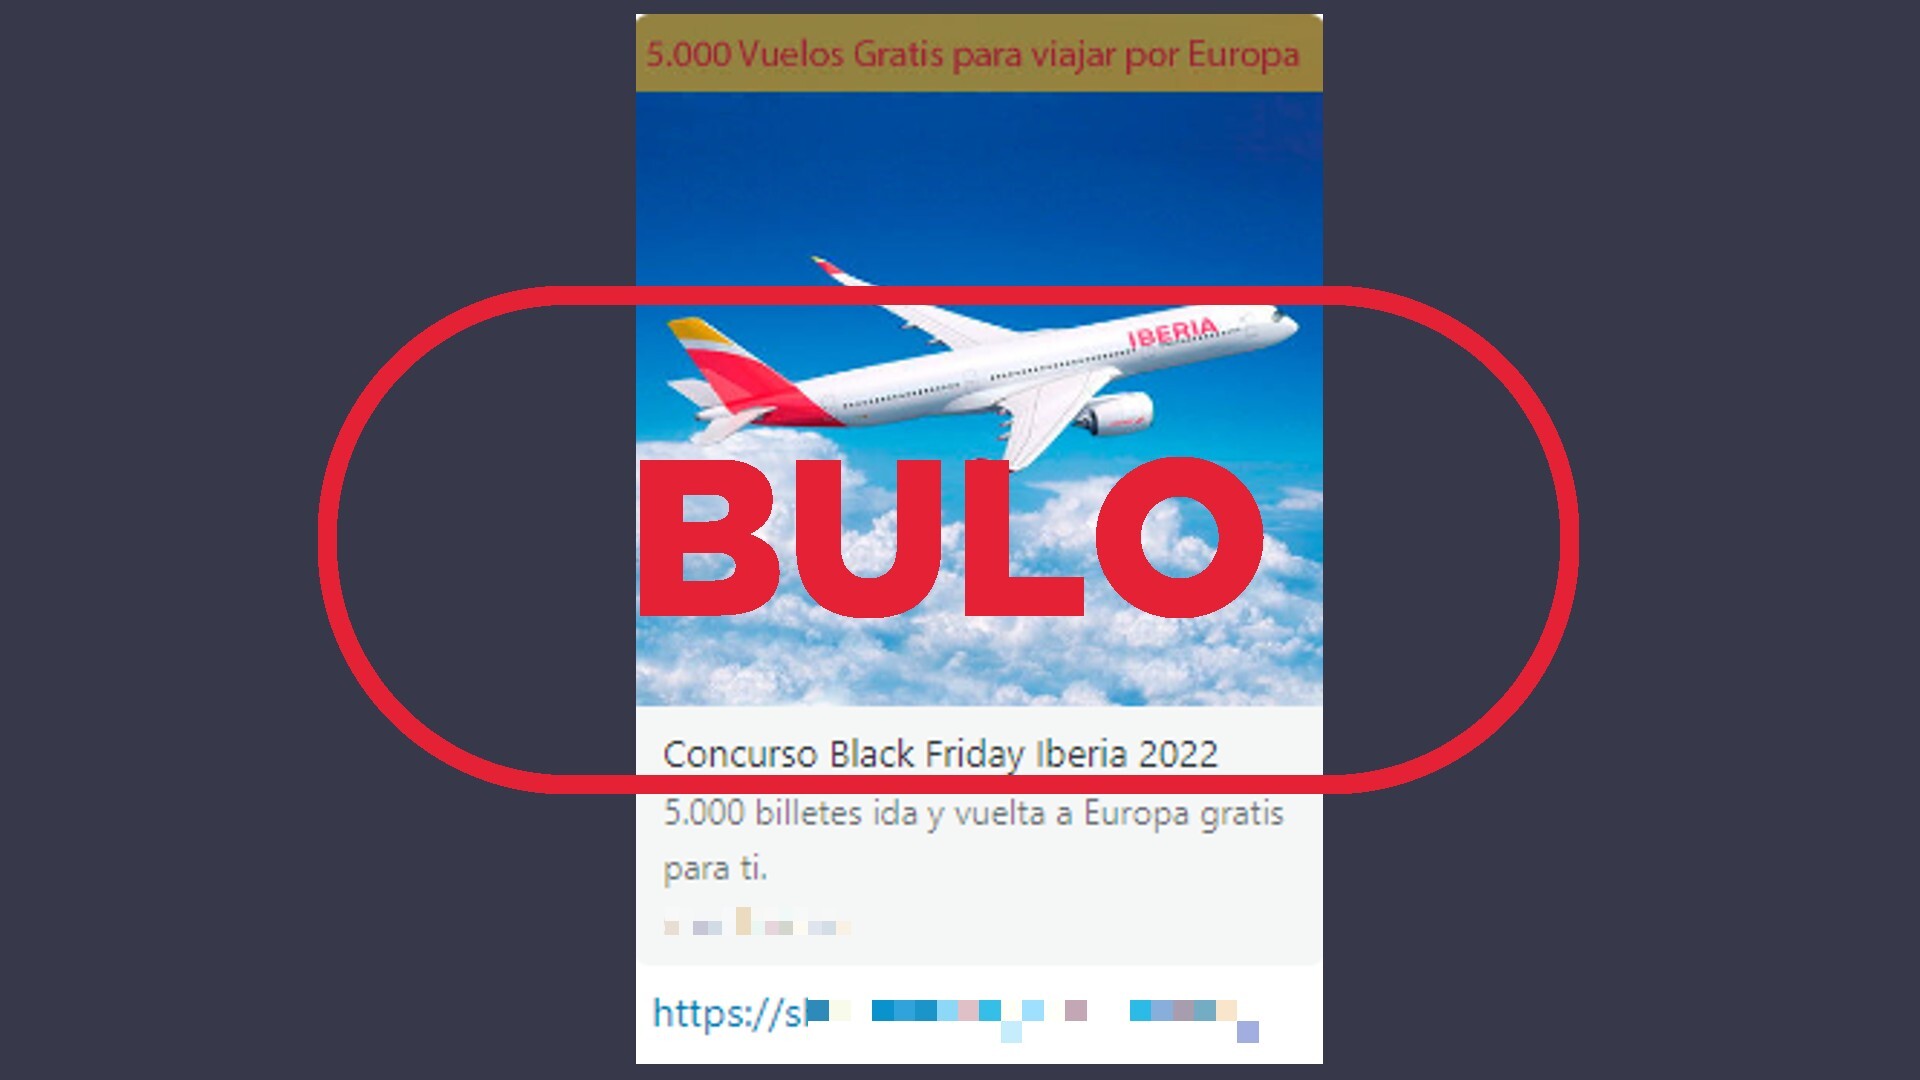 Estación de ferrocarril discreción Punto de referencia Iberia no sortea vuelos gratis por el Black Friday, es un fraude